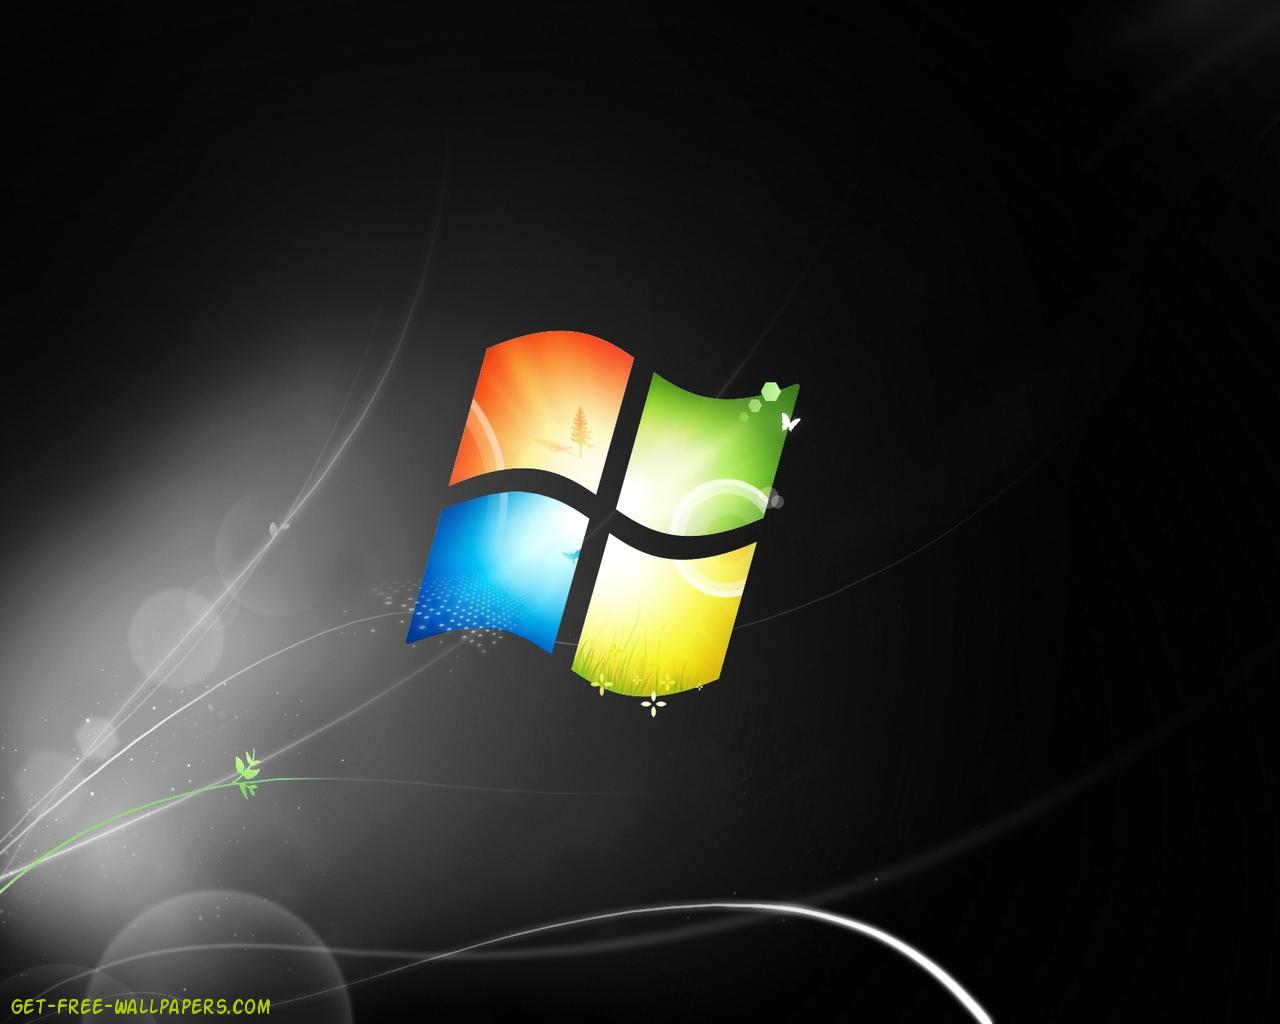 49+] Windows 7 Ultimate Wallpapers Download - WallpaperSafari